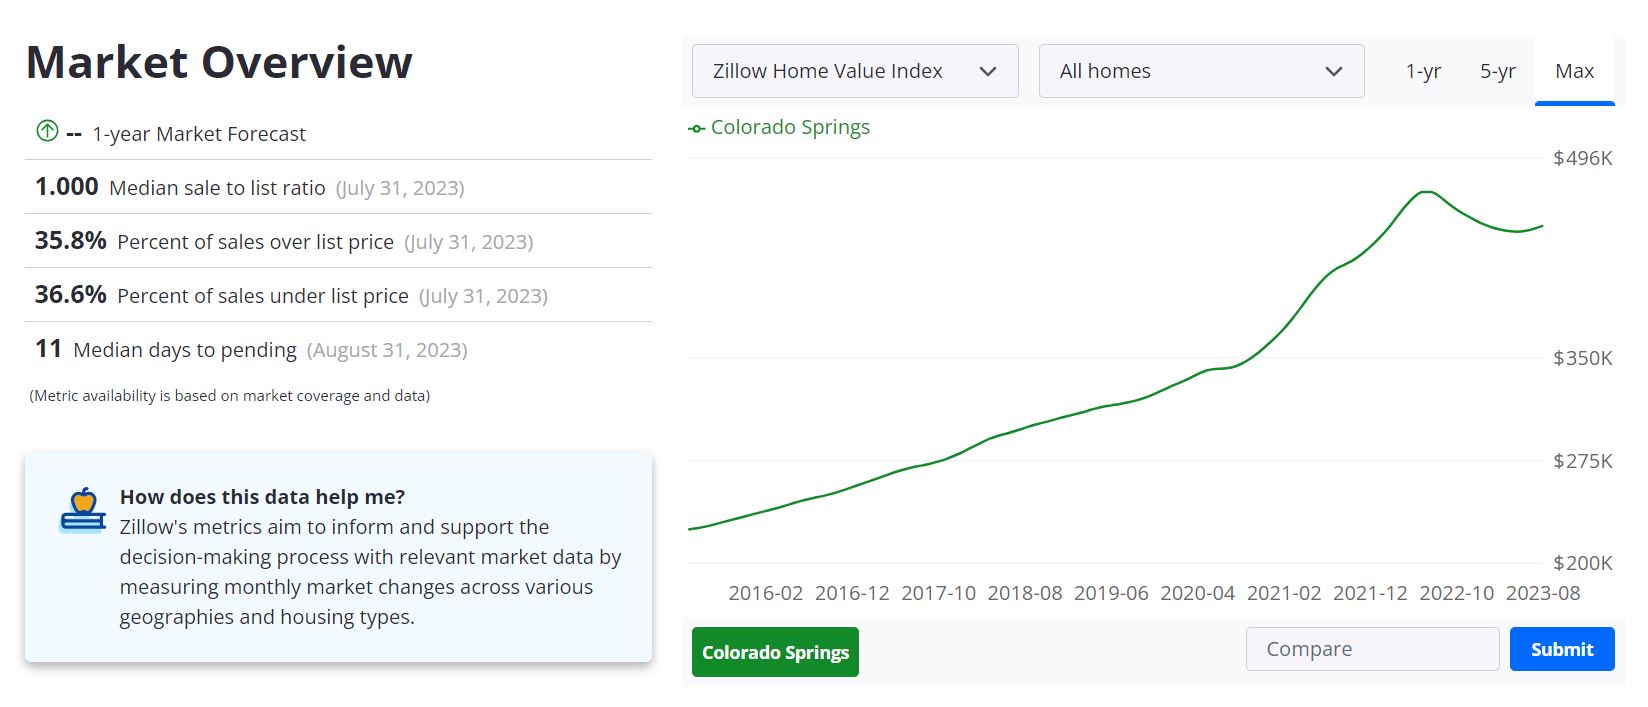 Colorado Springs Housing Market Forecast 2023-2024